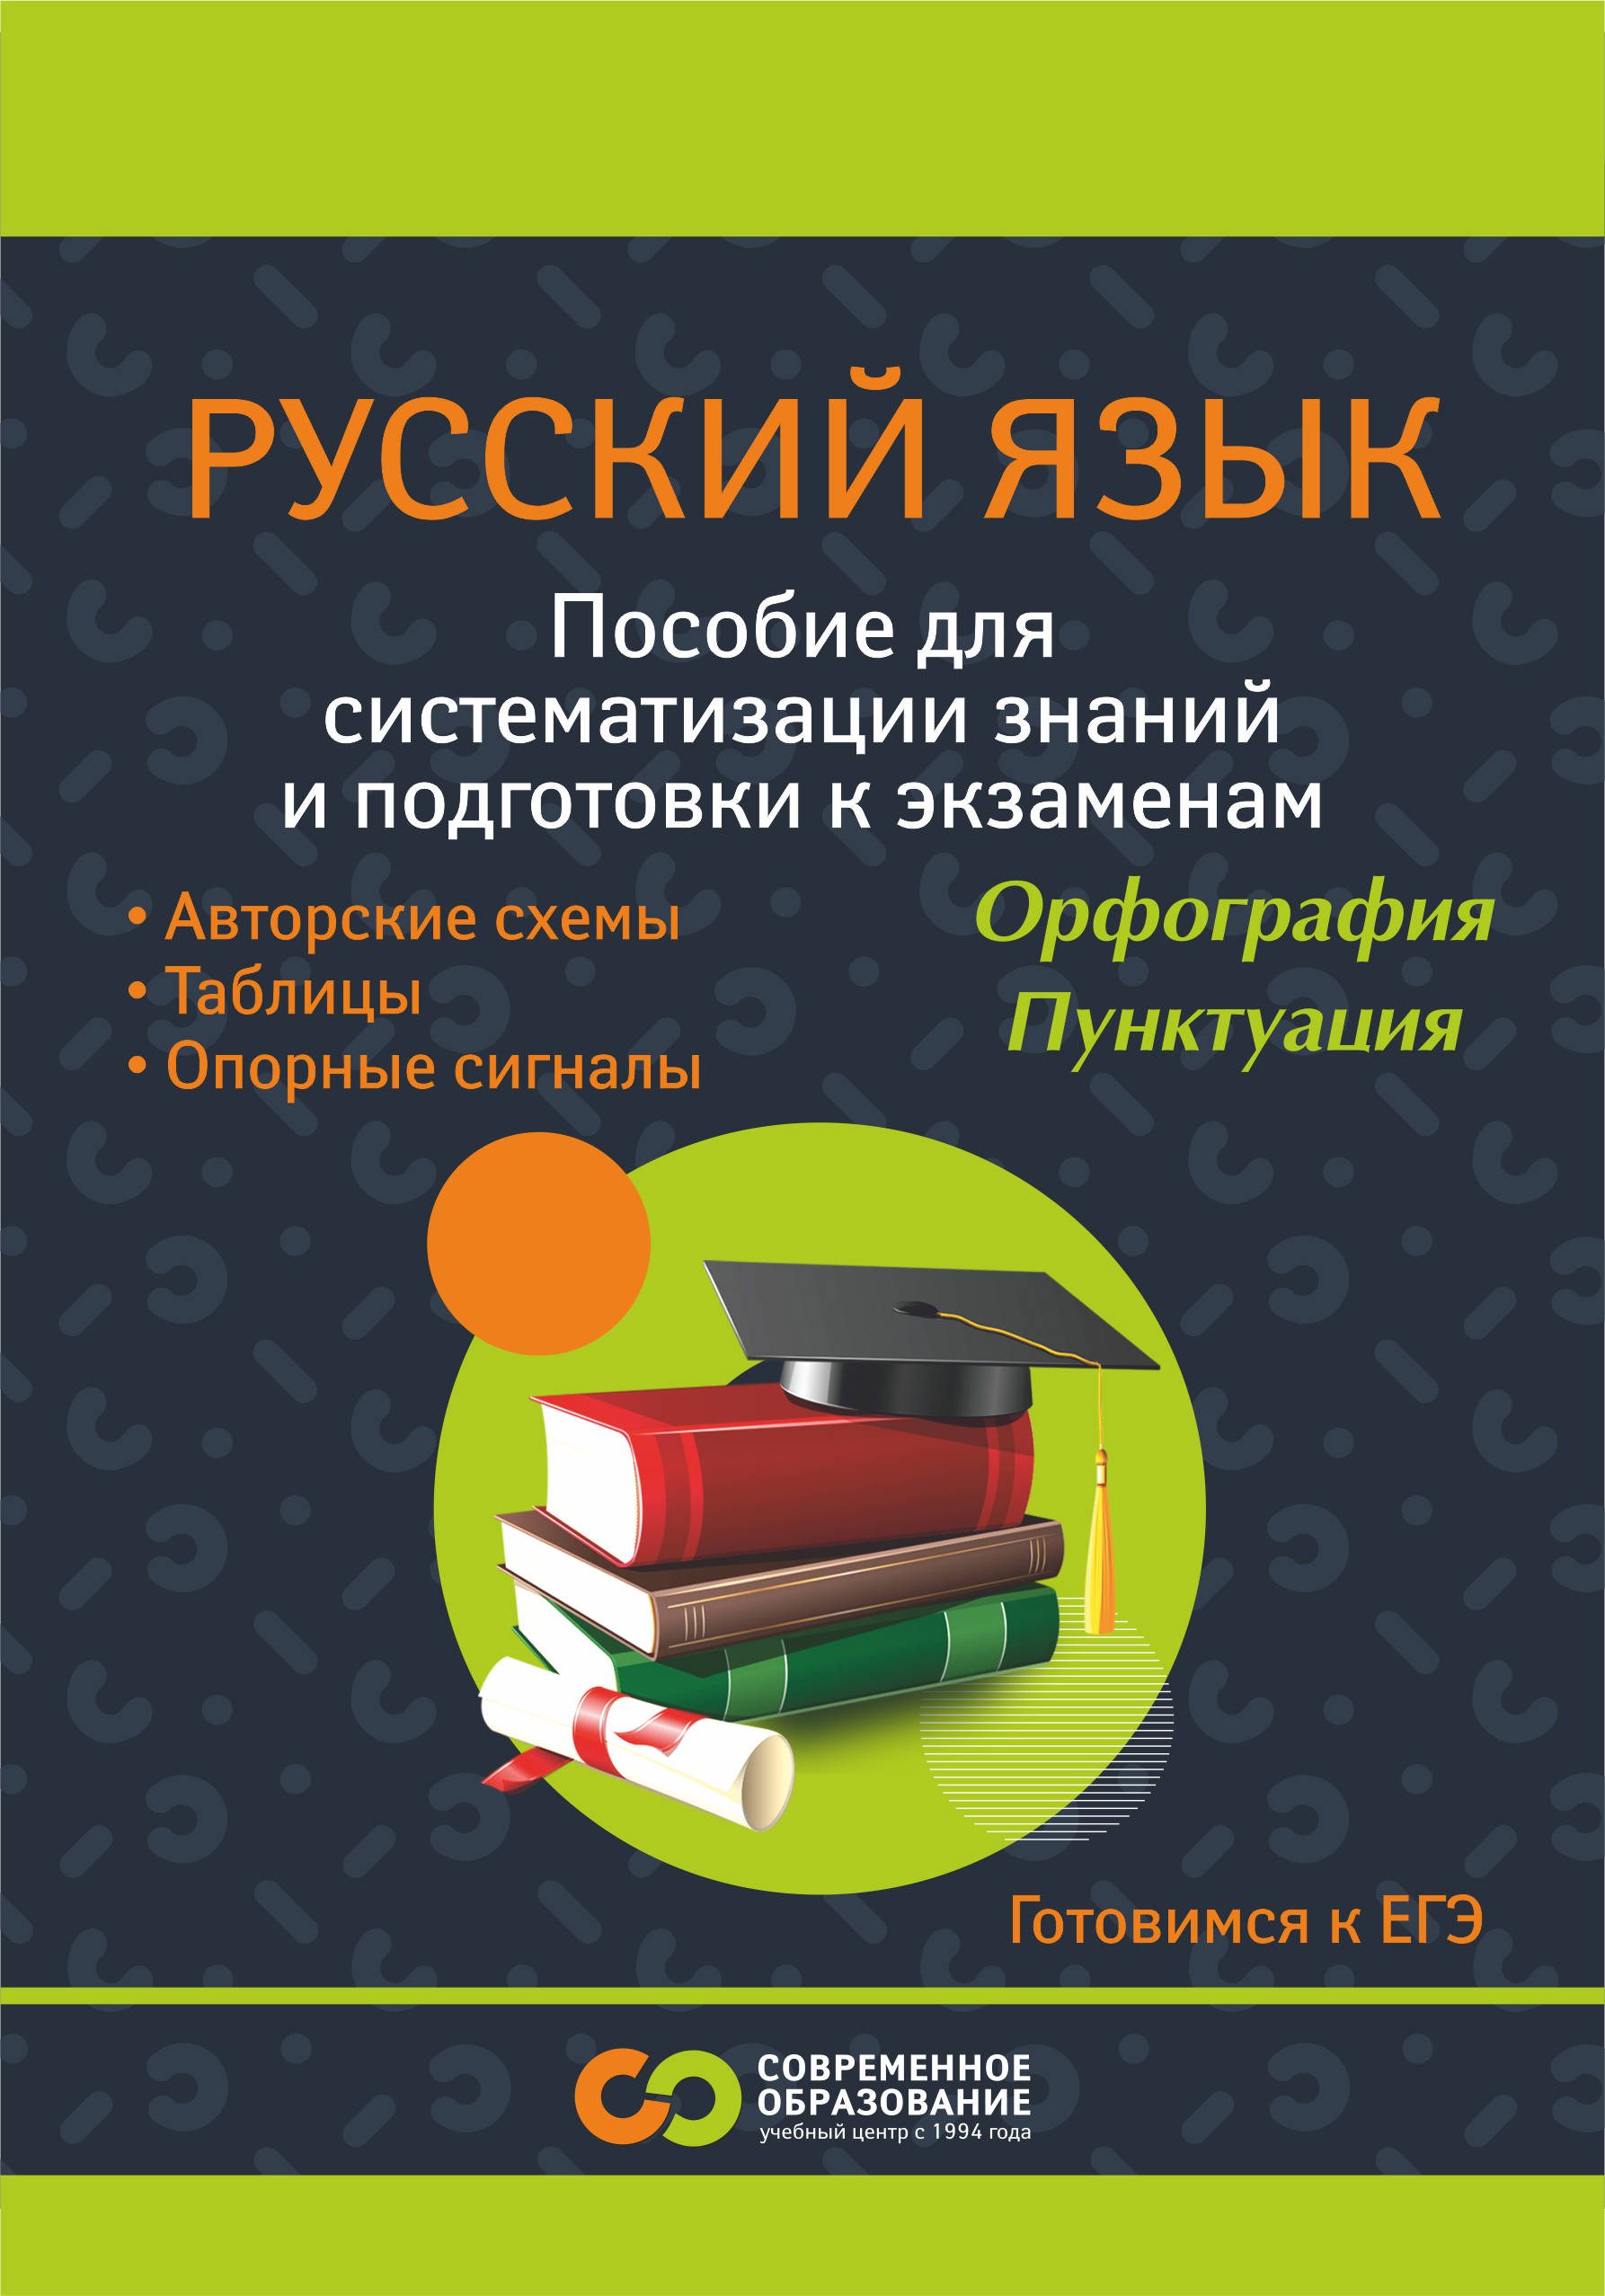 Пособие для систематизации знаний и подготовки к экзаменам по русскому языку.<br> 8 - 11 класс - изображение №2